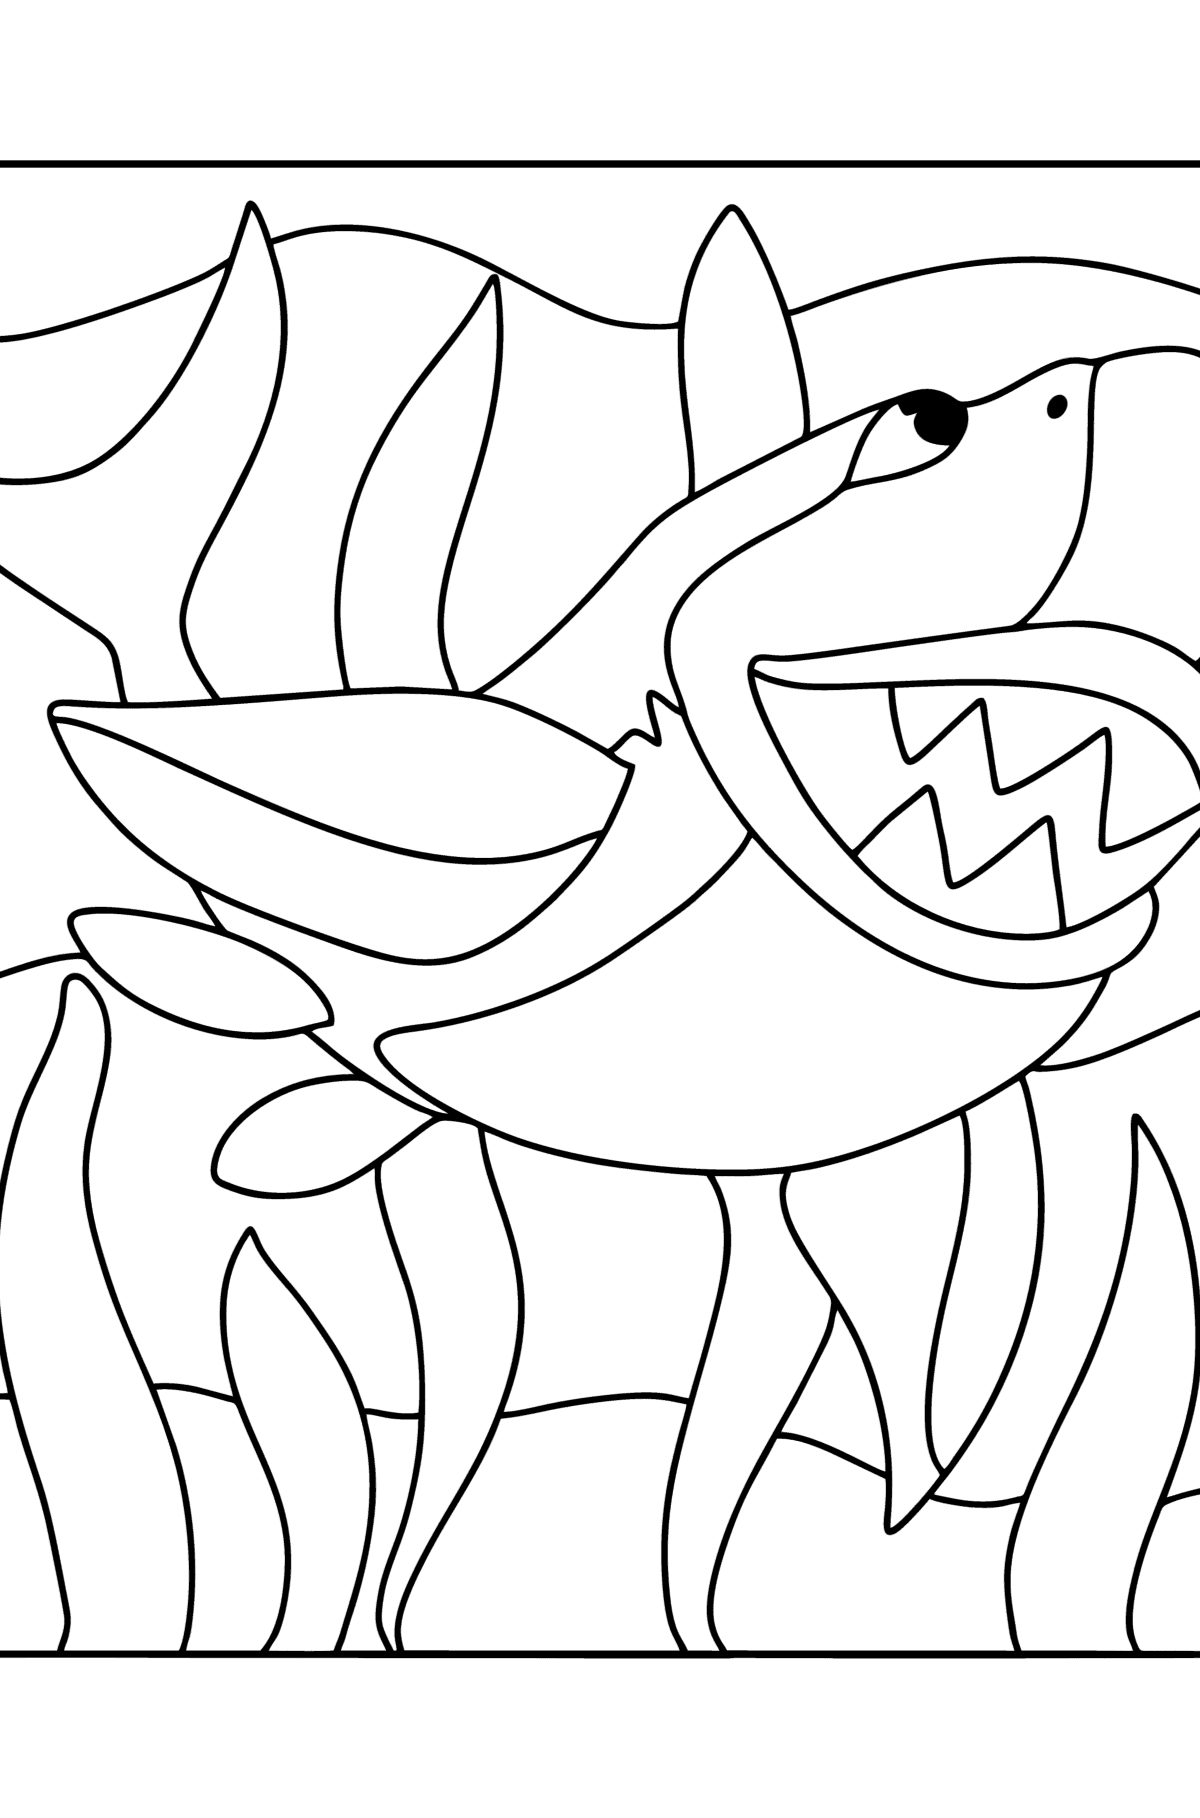 Desenho de Tubarão para colorir - Imagens para Colorir para Crianças